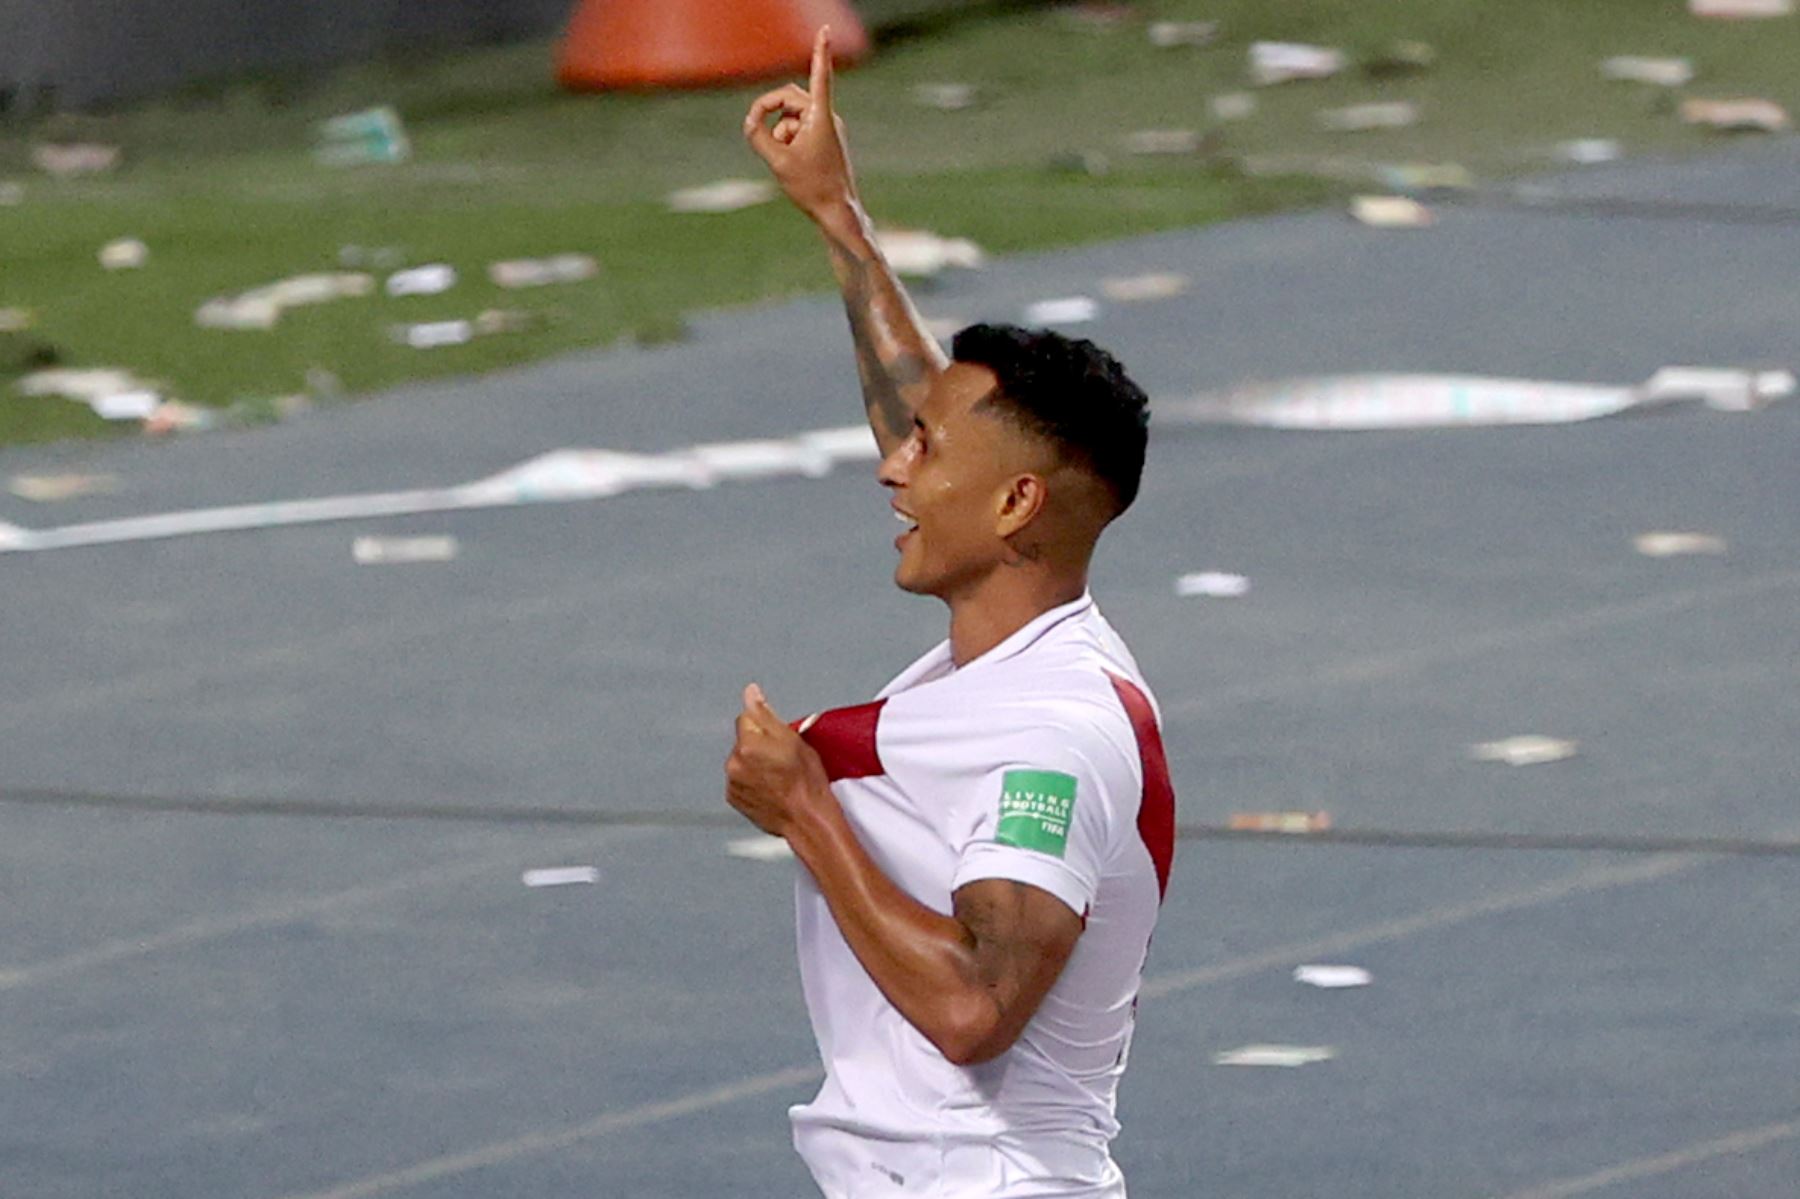 Un gol para el recuerdo, Yotún marca el 2-0 con el que Perú accede al derecho de jugar el repechaje rumbo al Mundial de Catar 2022. ANDINA/Vidal Tarqui